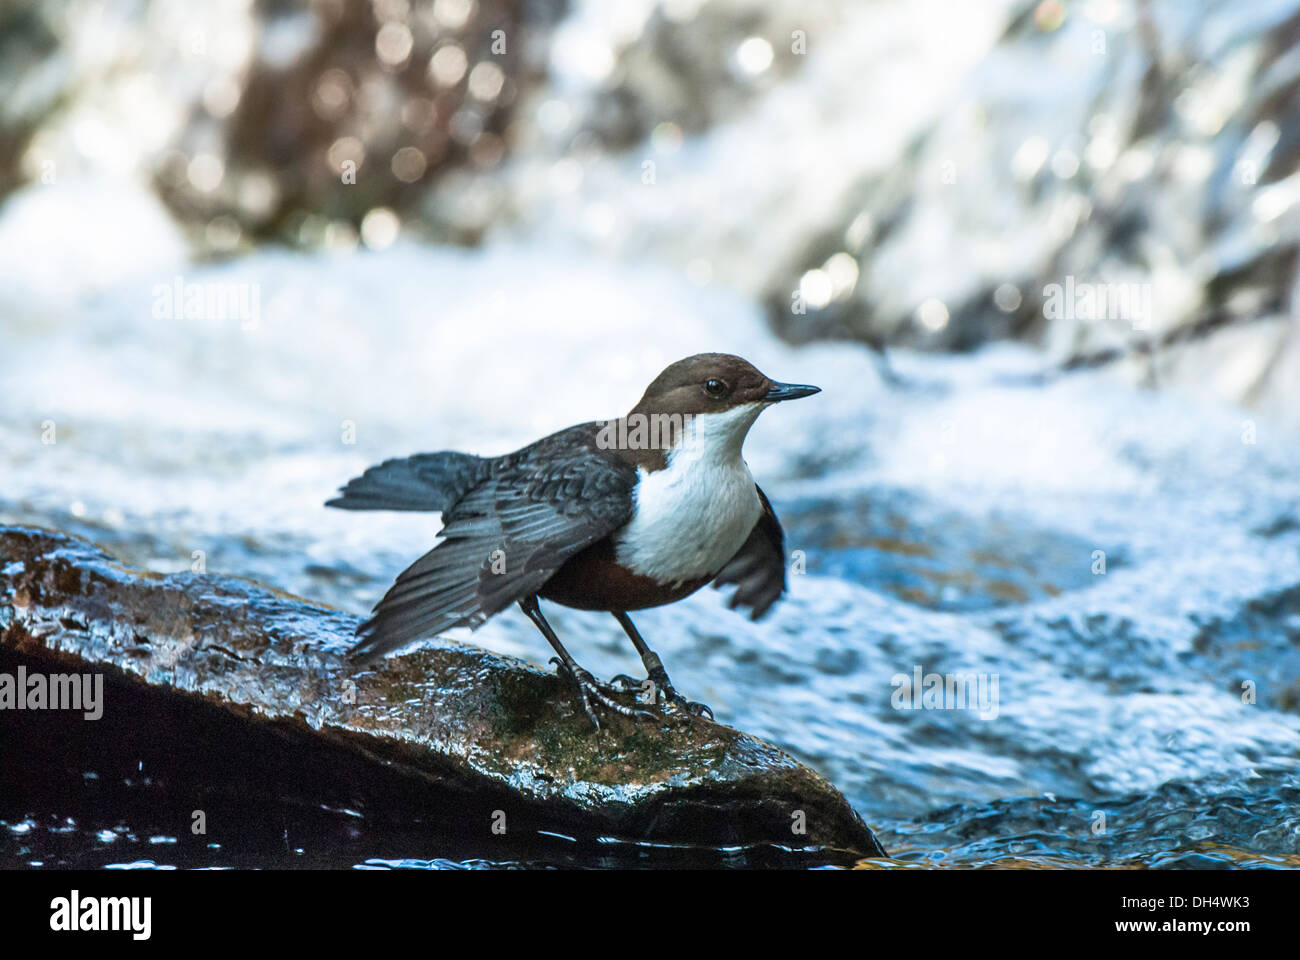 Dipper on rock in stream, fluttering wings. Stock Photo